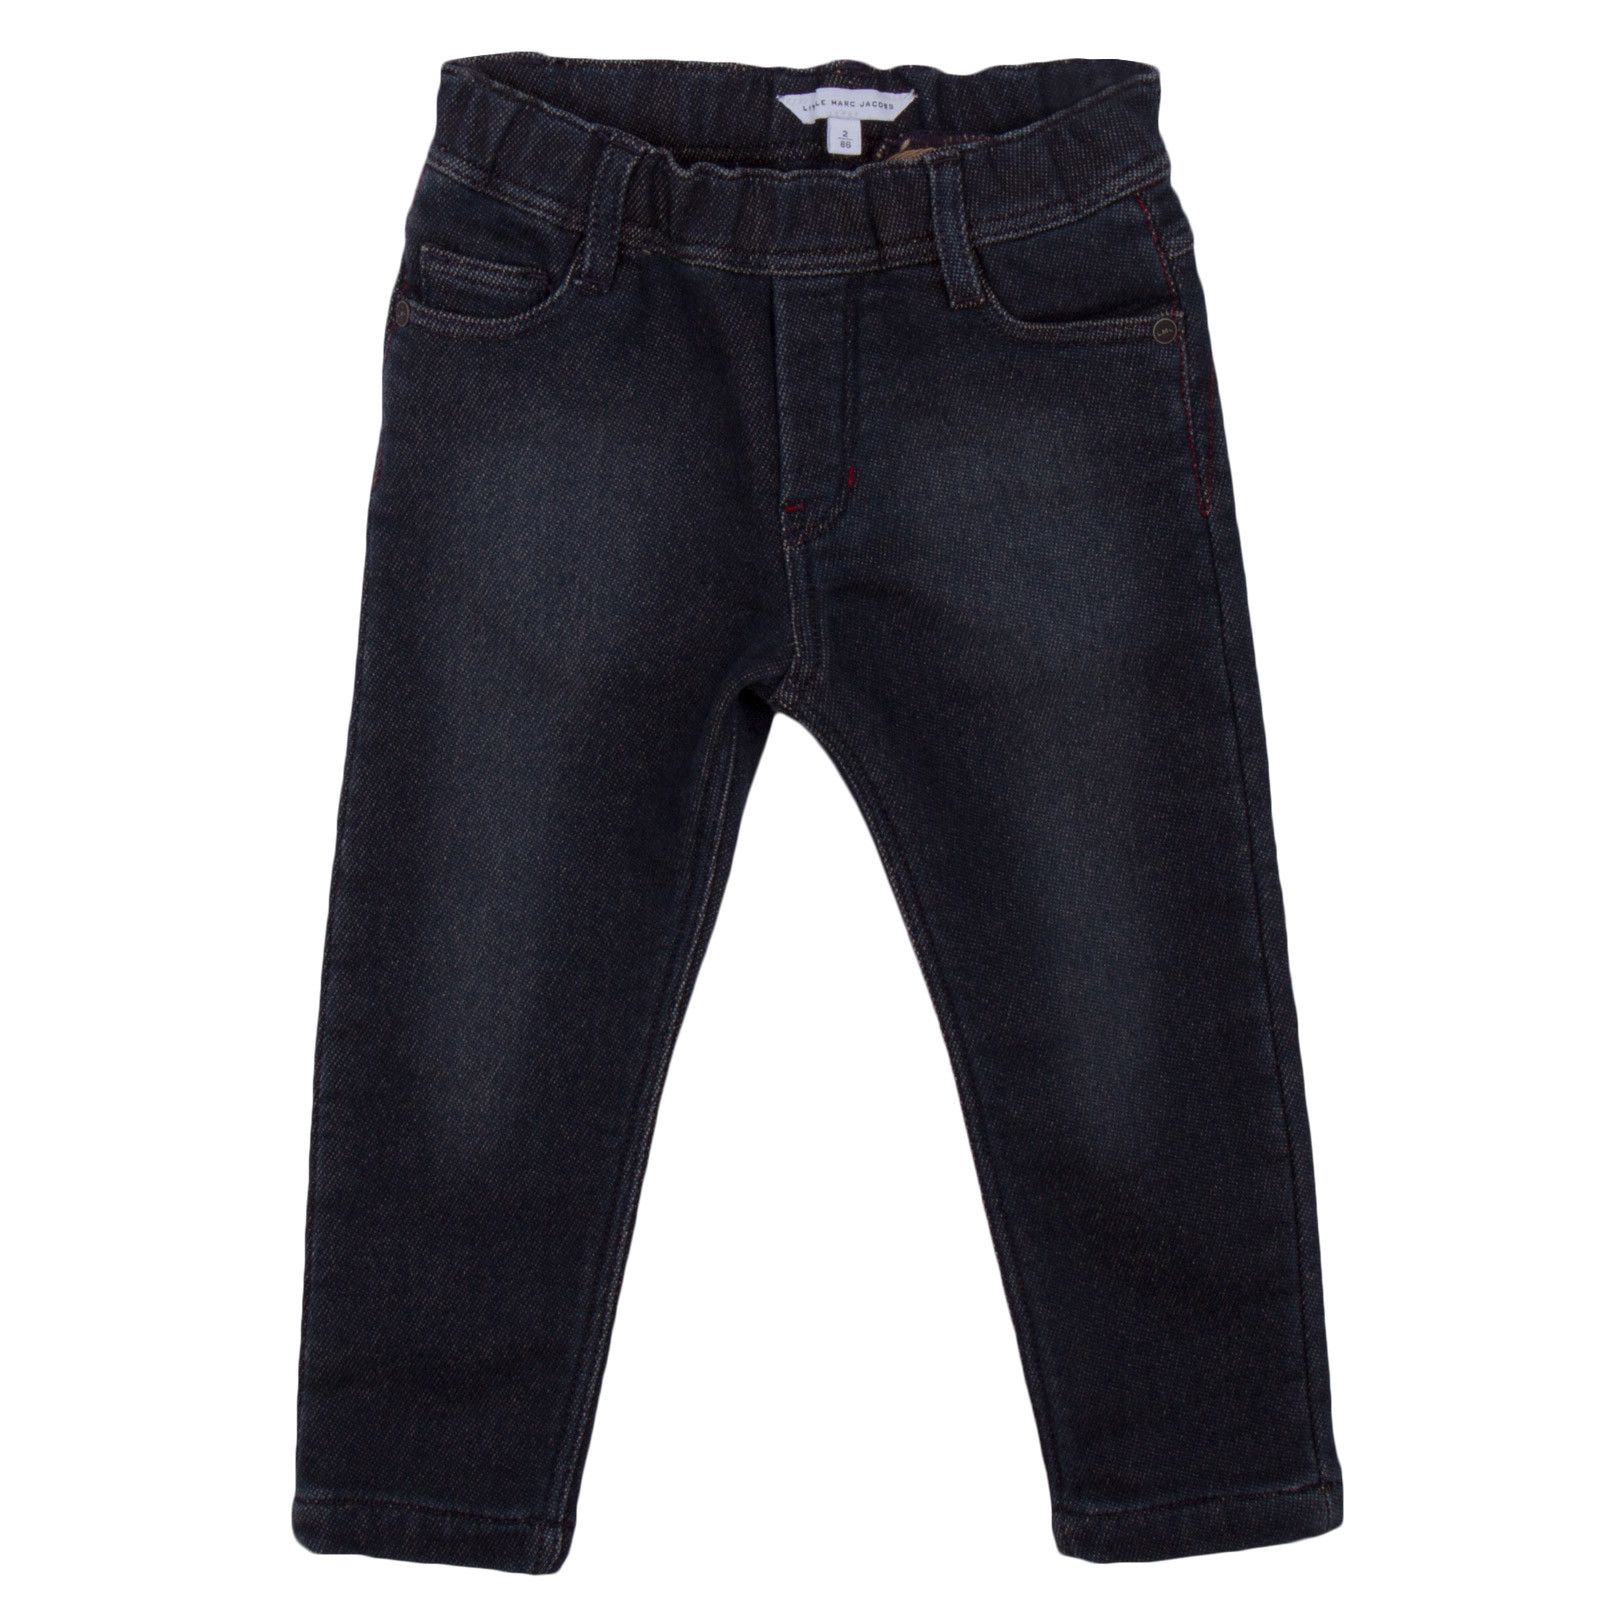 Boys Blue Demin Cotton Jeans - CÉMAROSE | Children's Fashion Store - 1